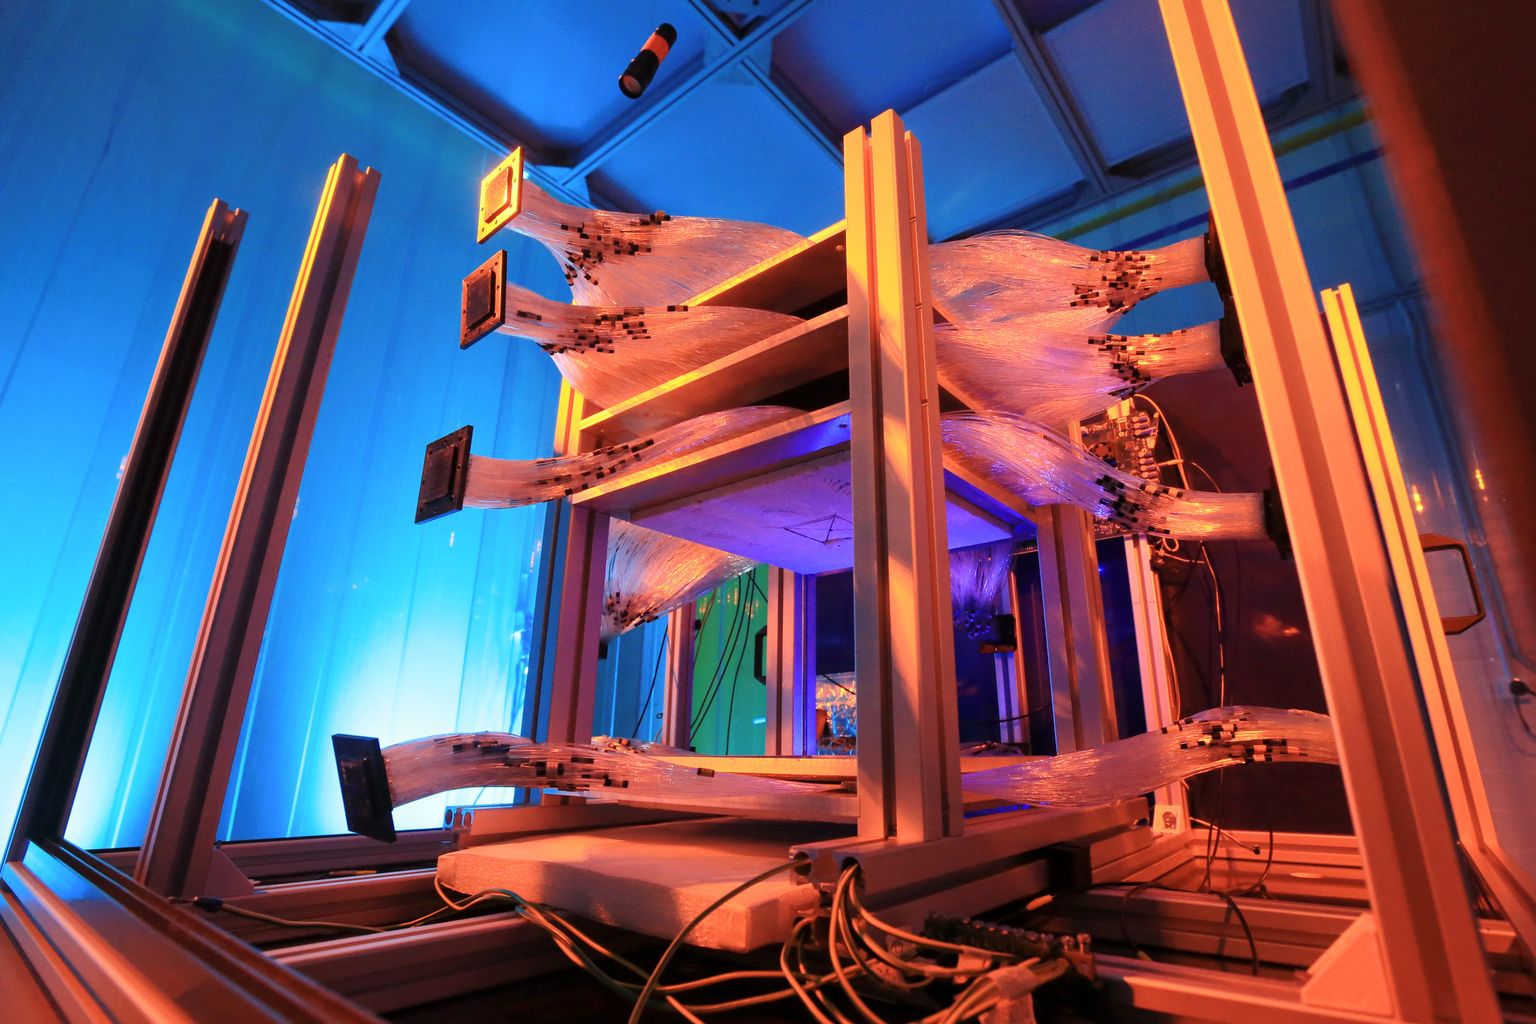 Selline näeb välja GScani müüonitomograafi laboriprototüüp. Tartu tootmishoones plaanitakse neid peagi tootma hakata, üks esimesi tõsisemaid katsetusi 3D kaarditamisel tehakse aga Paldiski tuumareakotri sisu uurimisel.